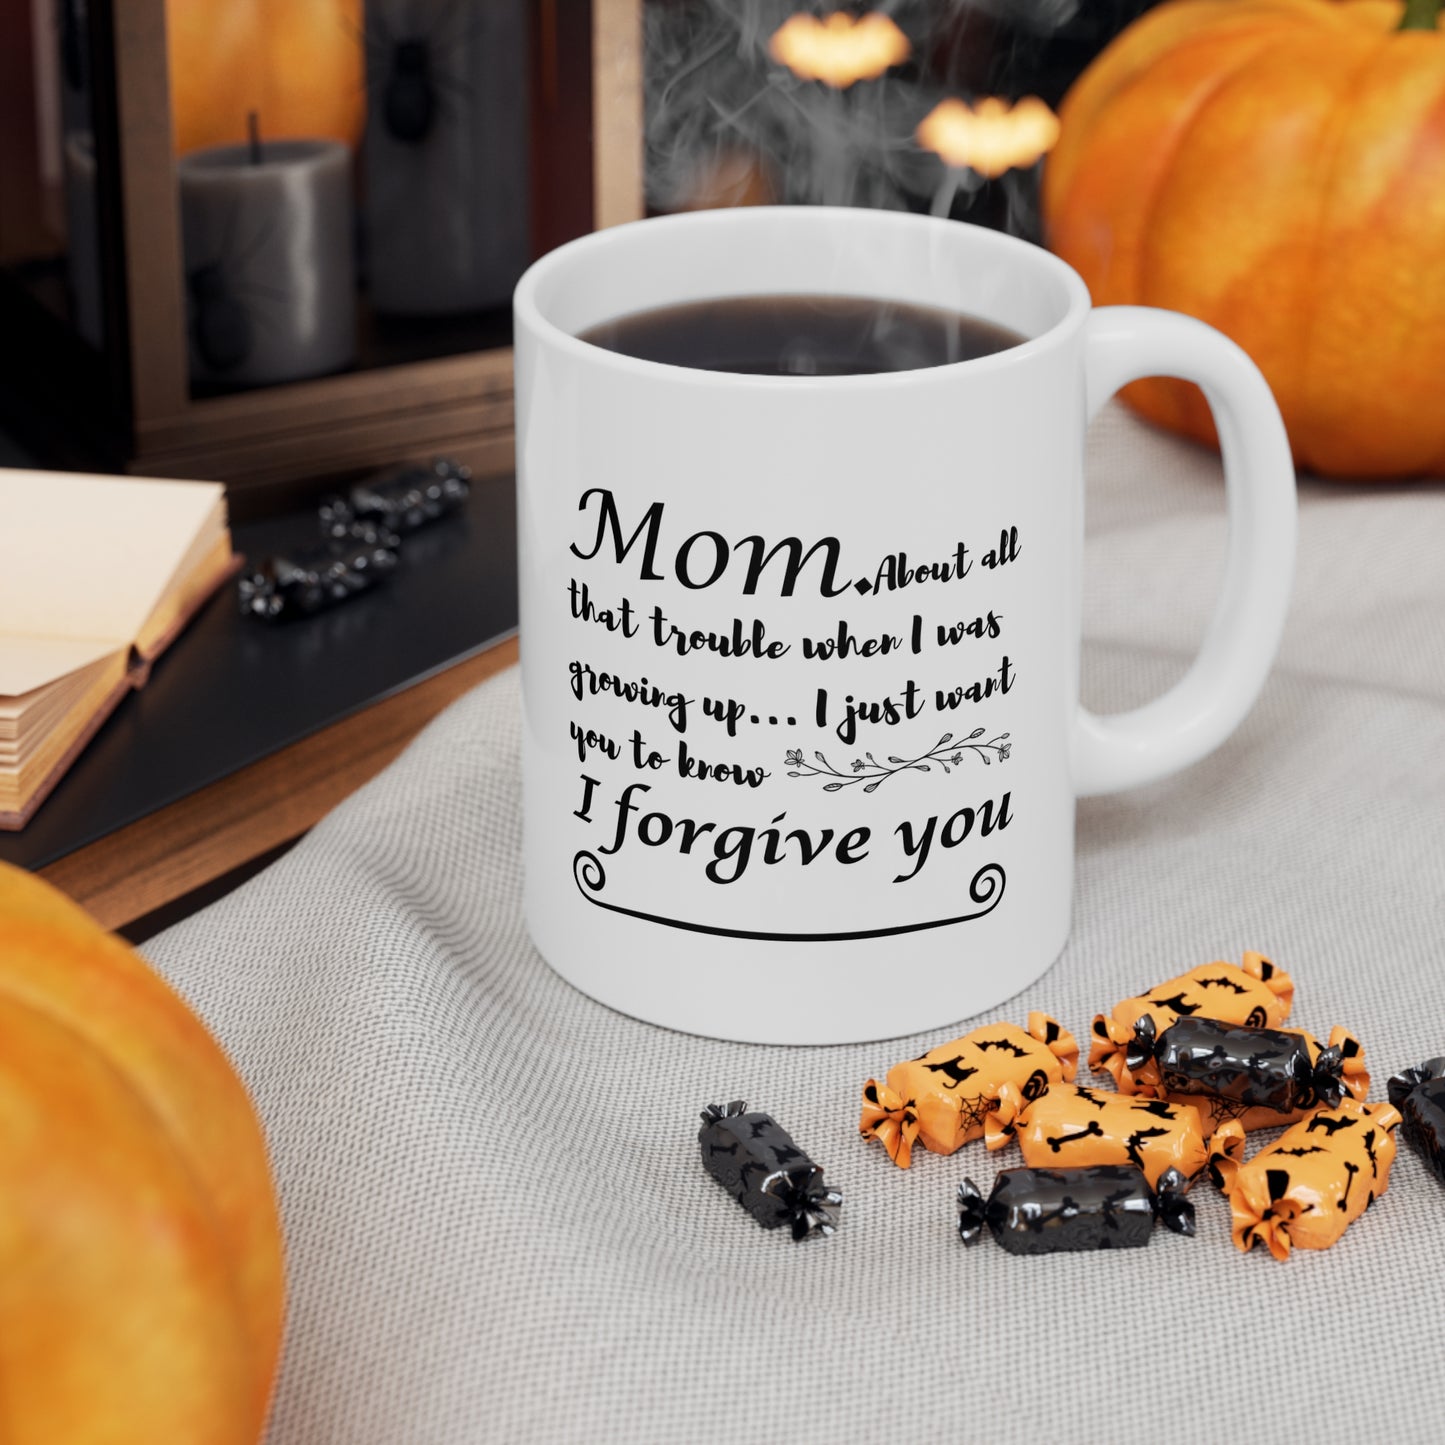 Mother's Day gift mug